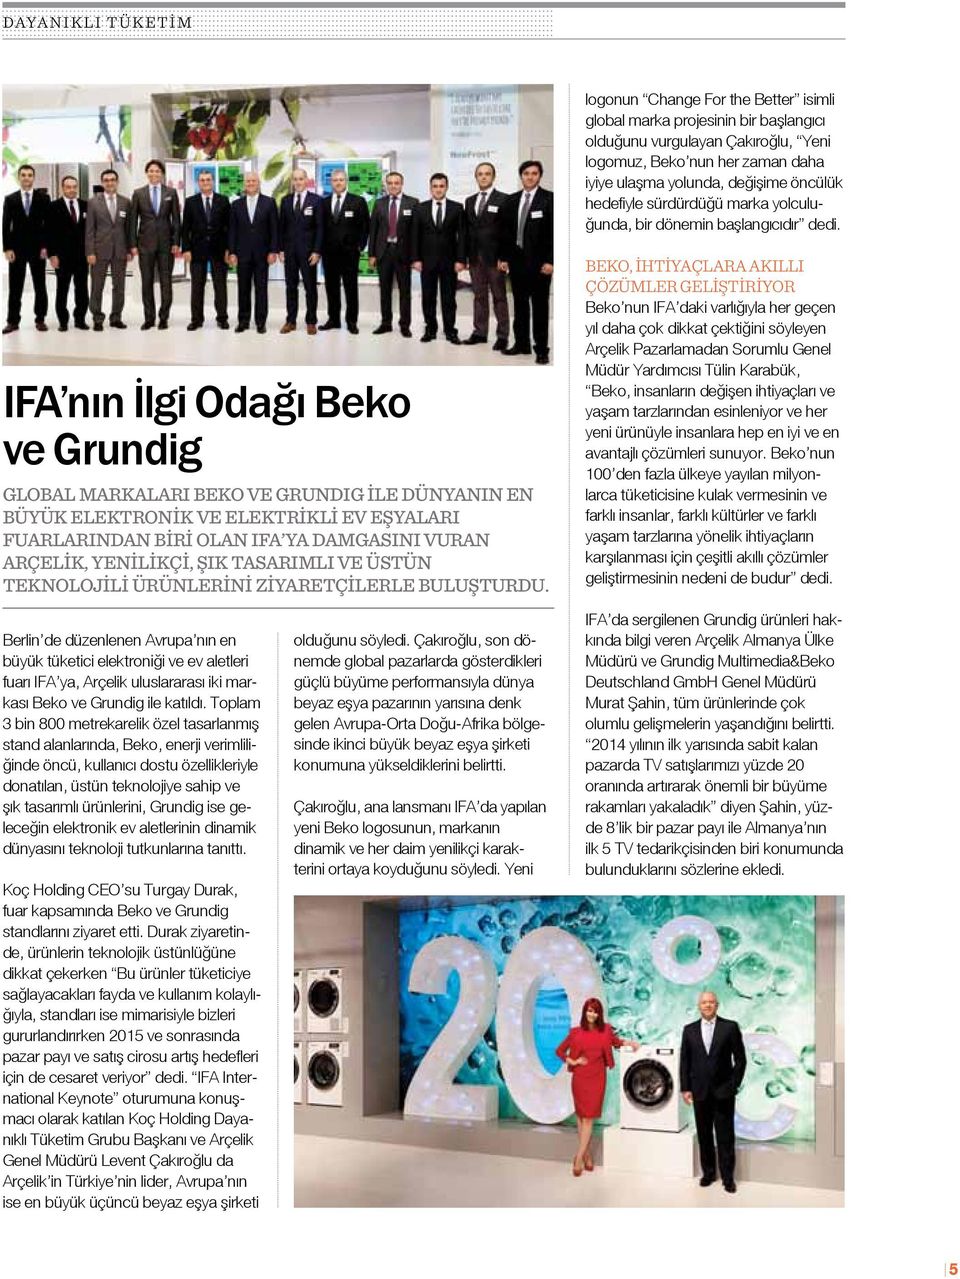 IFA nın İlgi Odağı Beko ve Grundig Global markaları Beko ve GrundIg ile dünyanın en büyük elektronik ve elektrikli ev eşyaları fuarlarından biri olan IFA ya damgasını vuran Arçelik, yenilikçi, şık